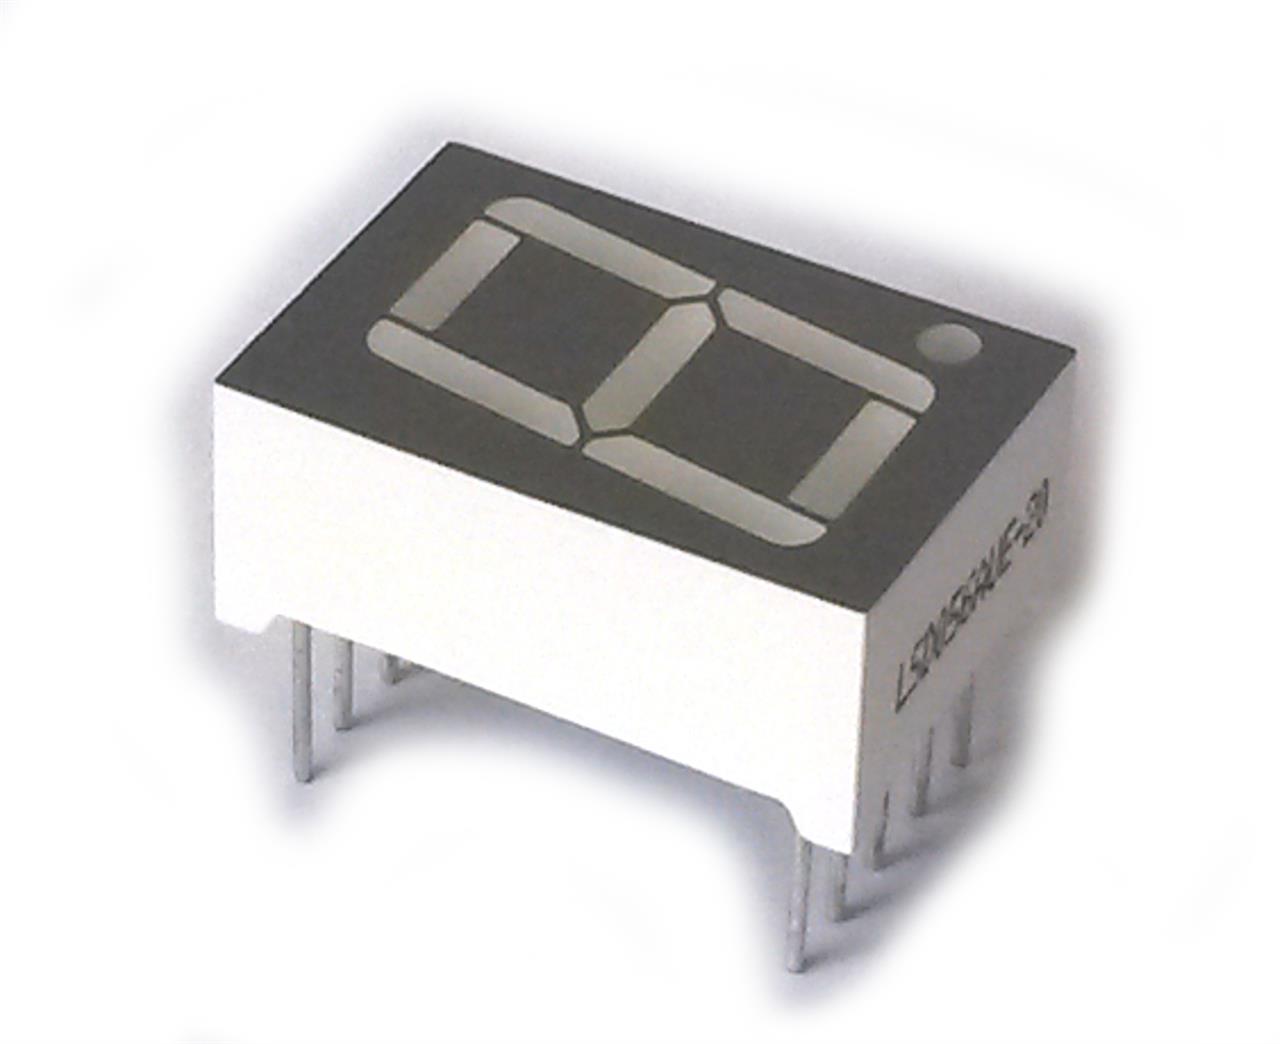 Semicondutores - Display 7 segmentos D168K vermelho catodo comum